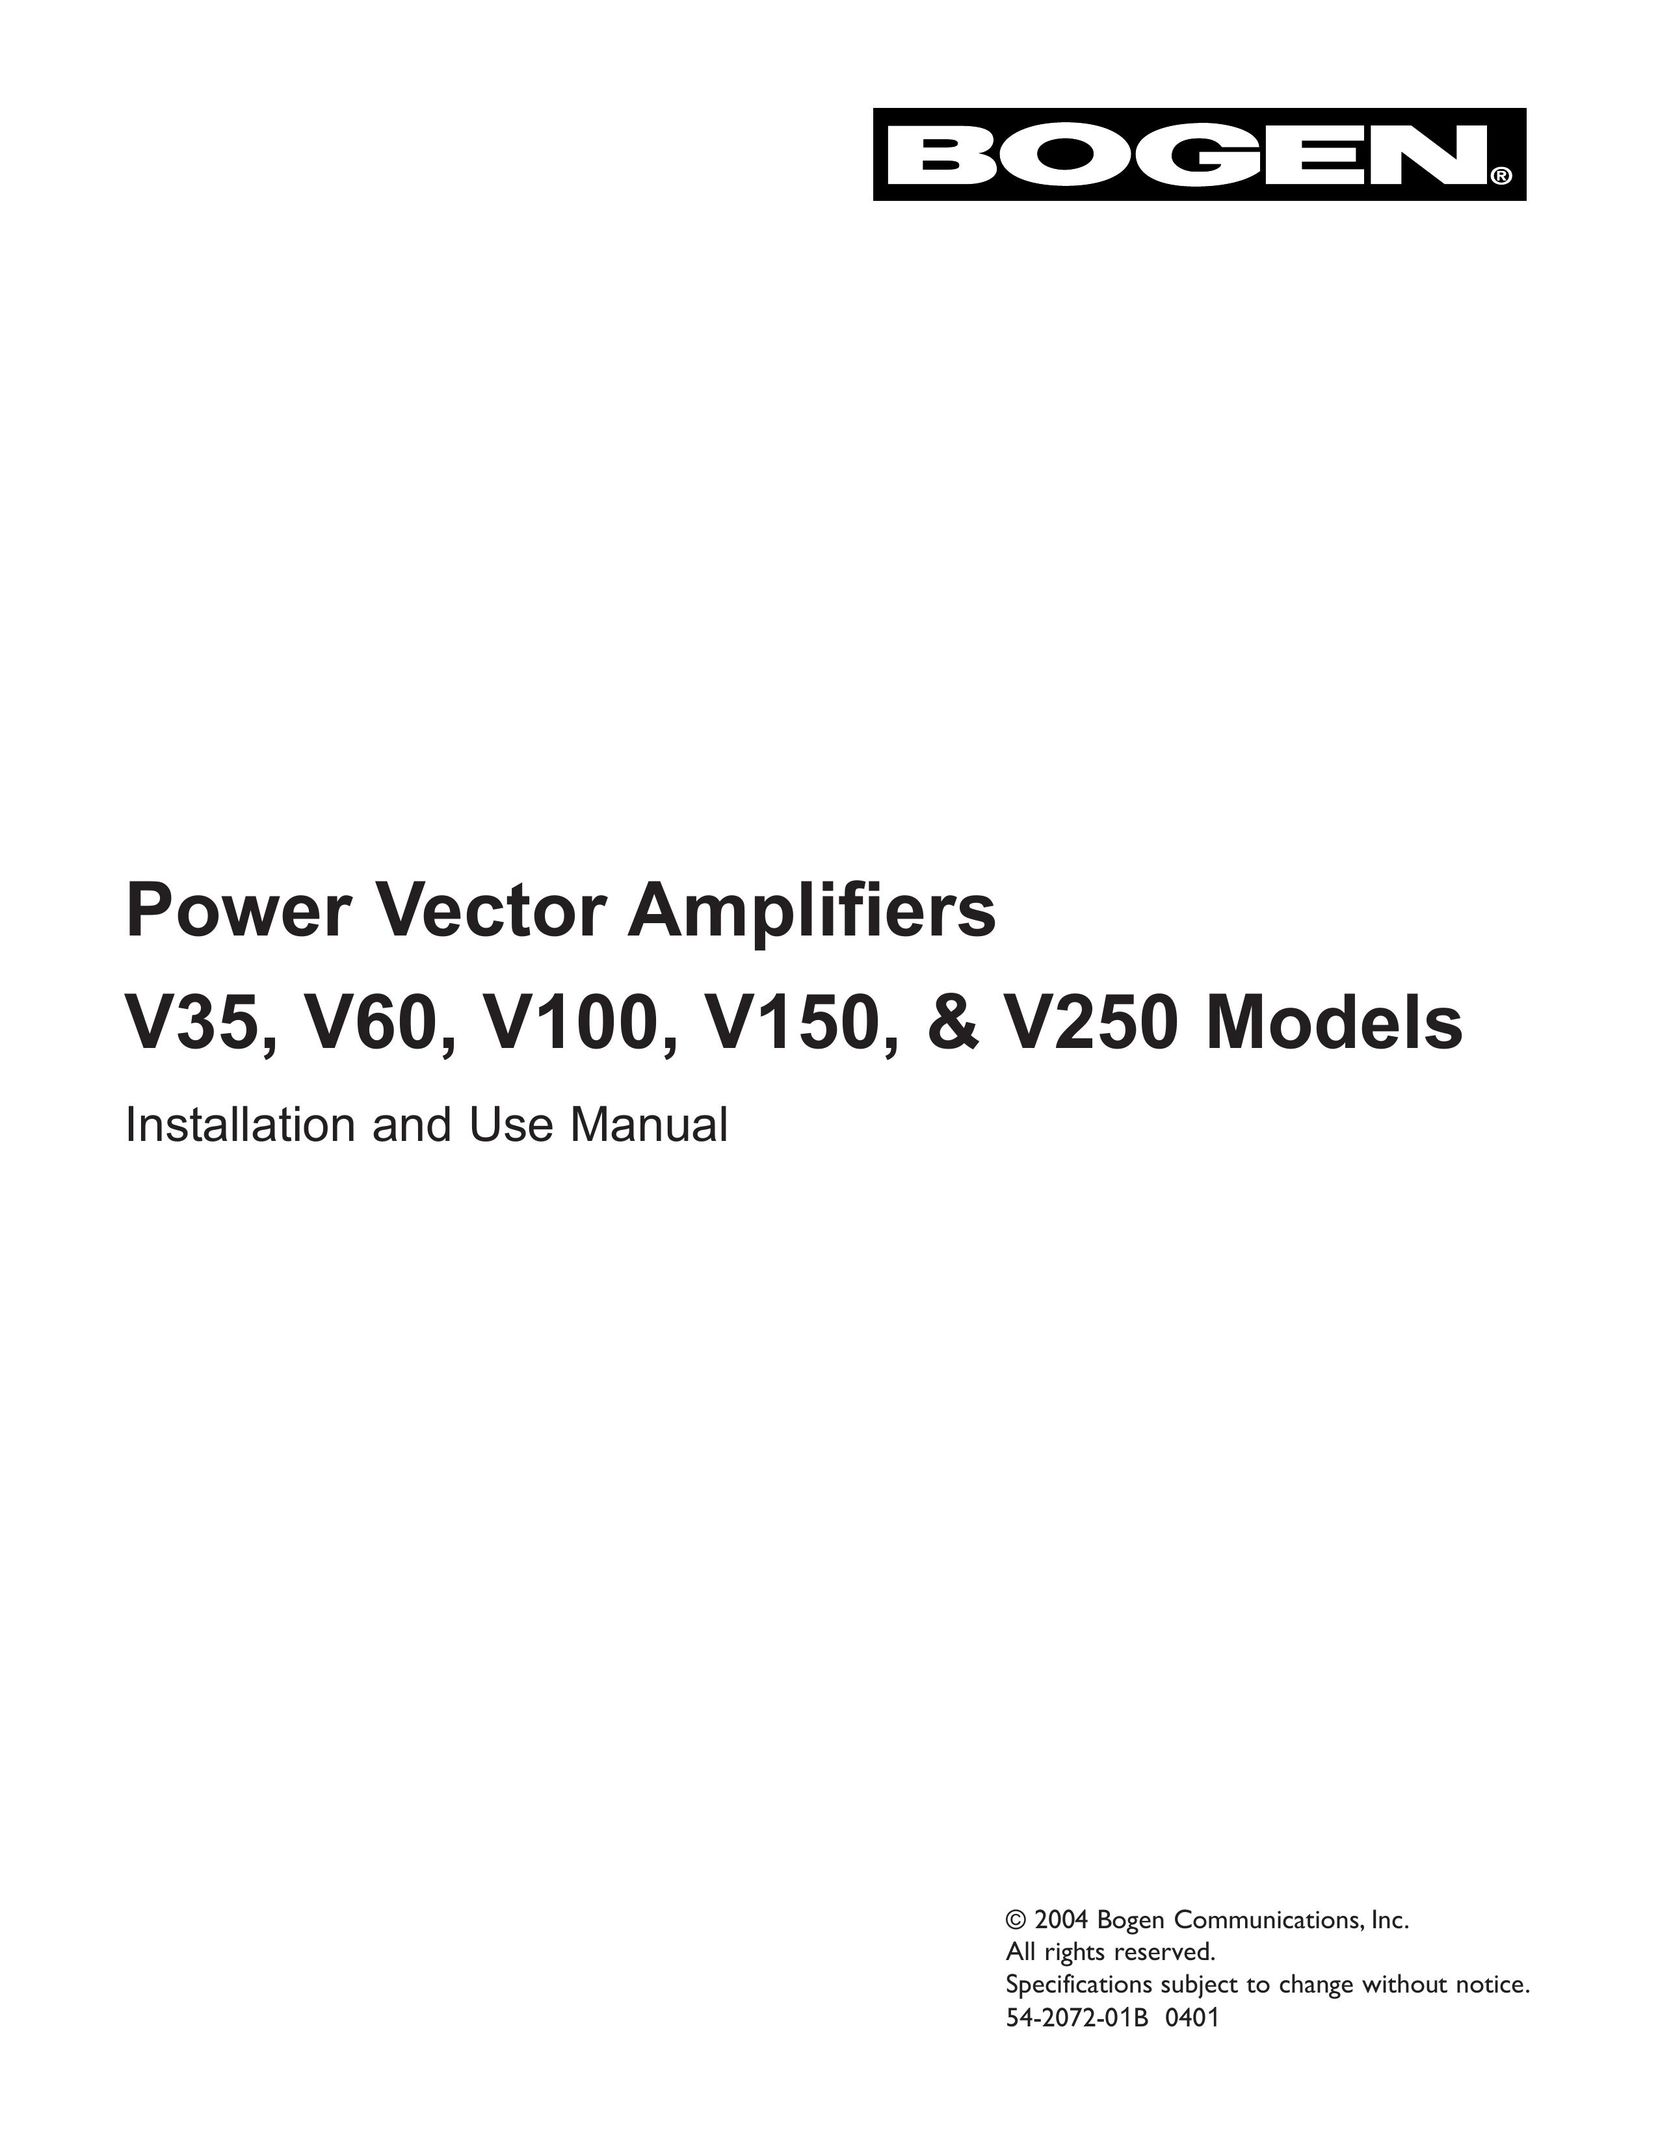 Bogen & V250 Stereo Amplifier User Manual